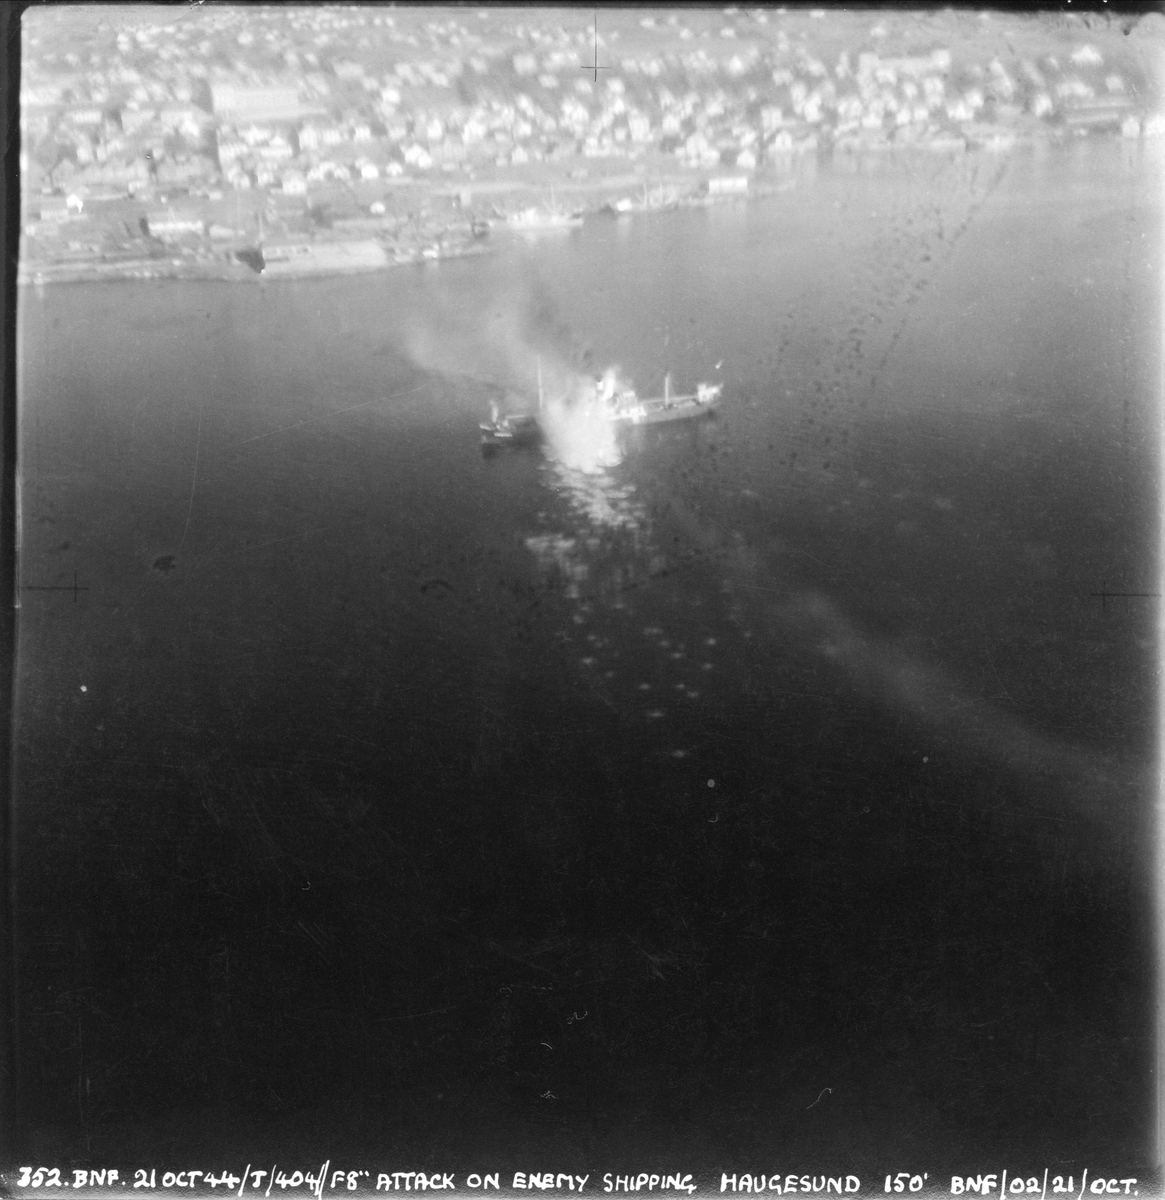 Fly fra 404 skvadronen angriper fiendtlig skip i Haugesund, 21. oktober 1944.